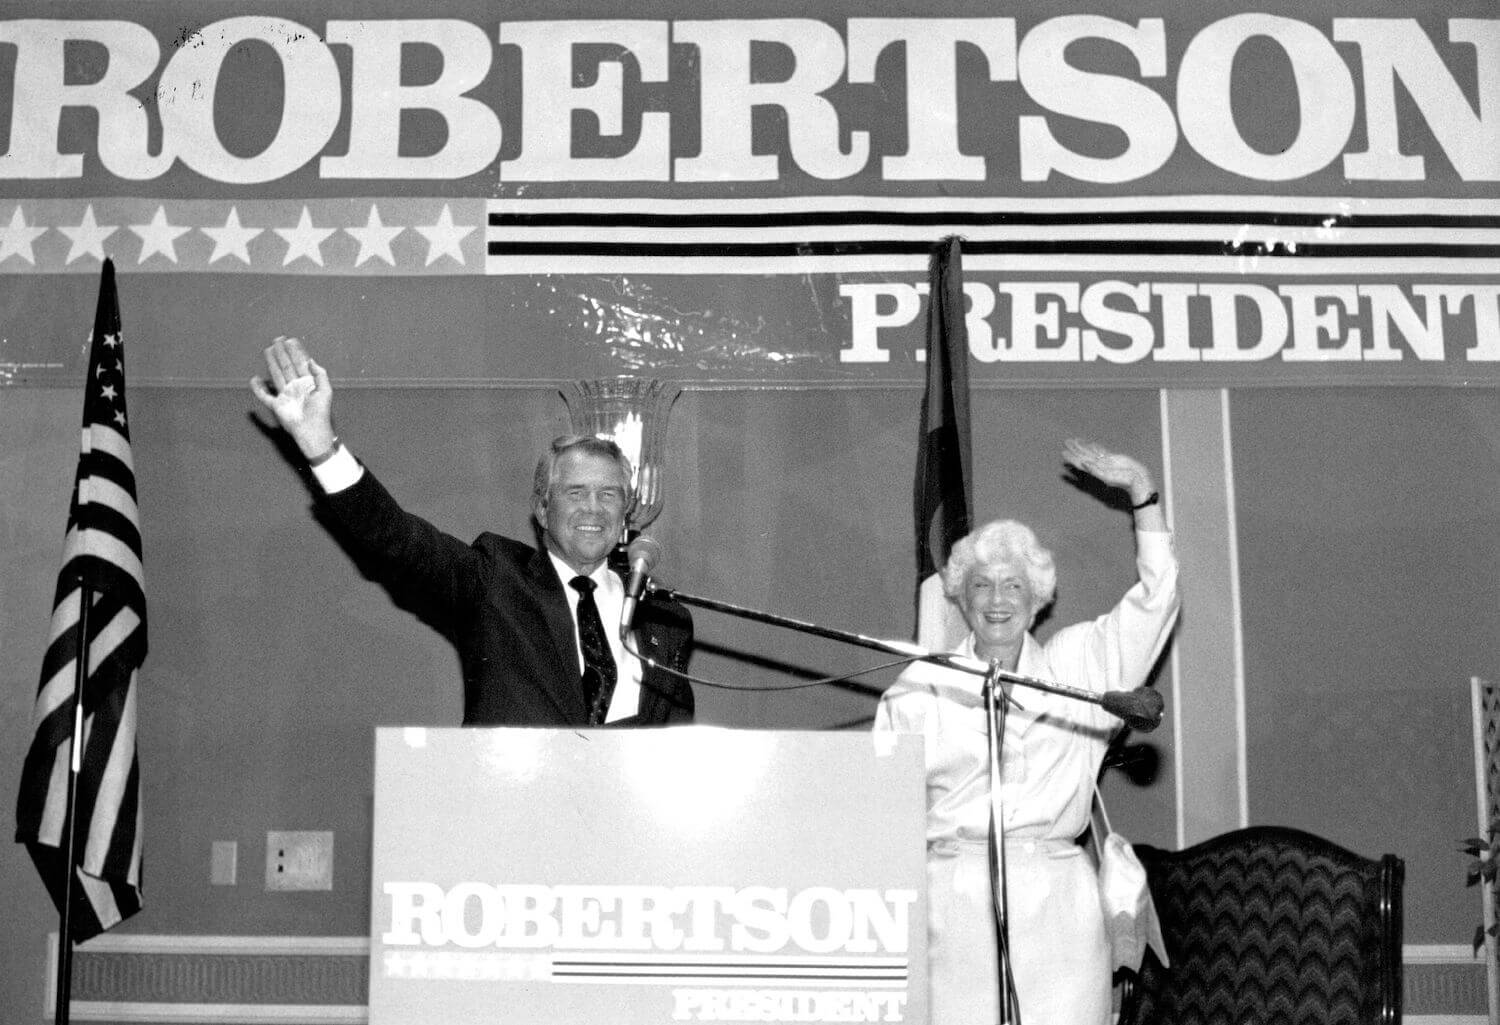 Pat Robertson'ın Karısı Dede Robertson Kimdi? Kaç Çocukları Oldu?